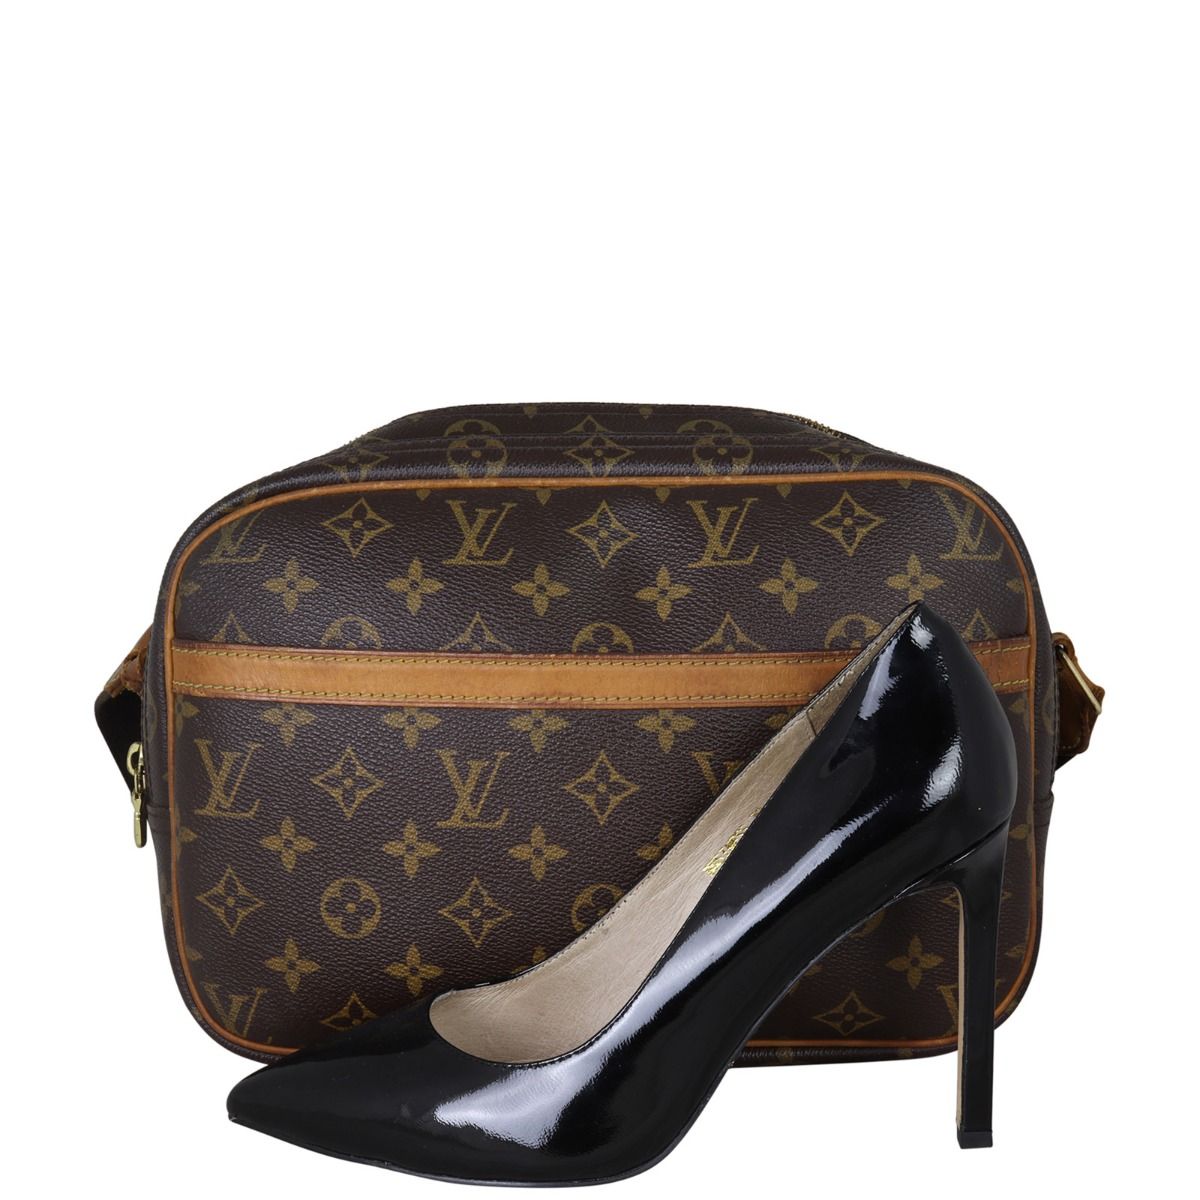 Louis Vuitton Reporter Handbag 225203